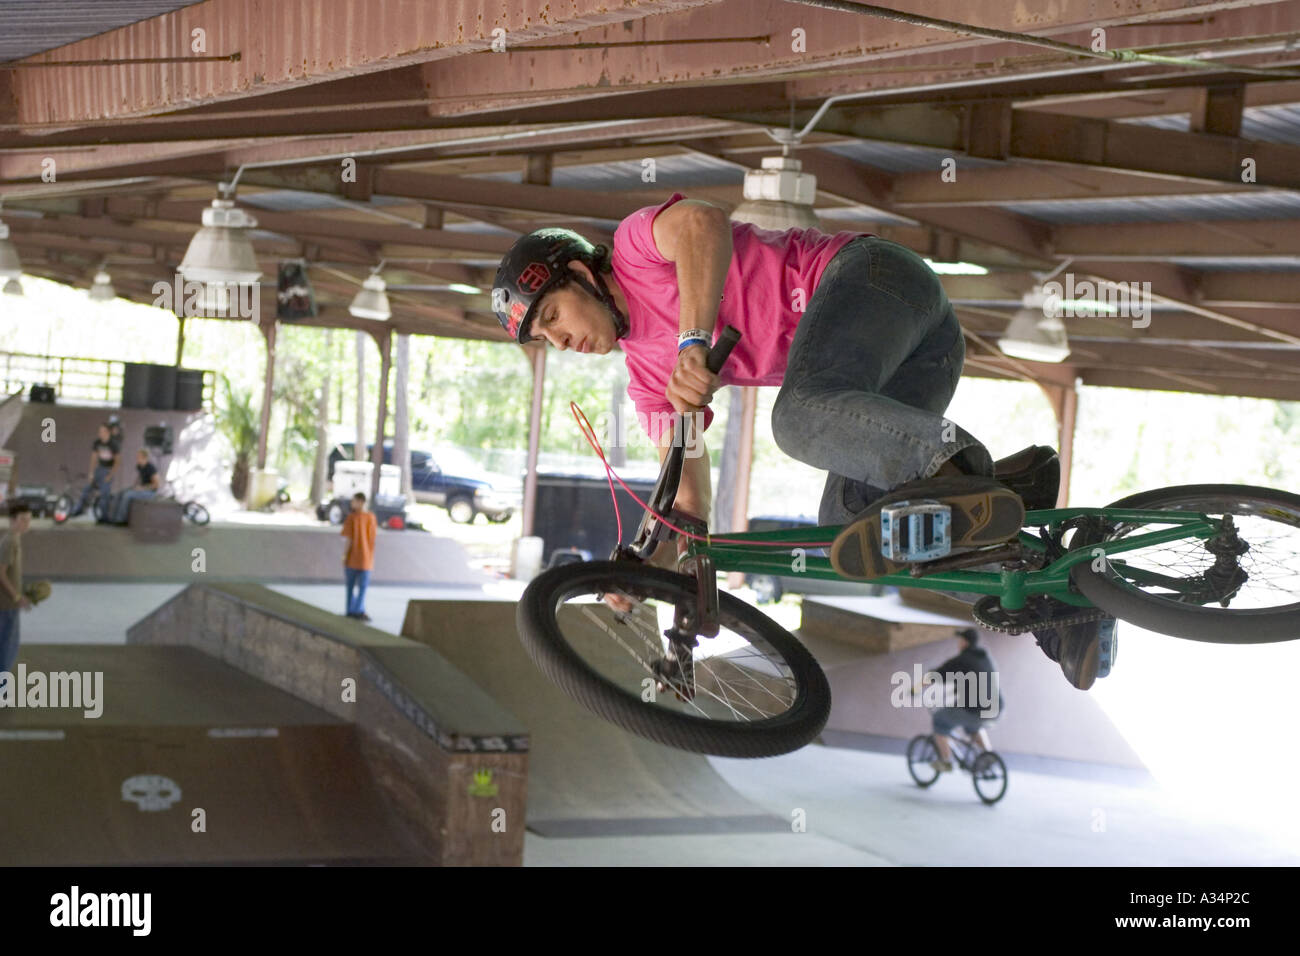 Bicicleta BMX rider realizar maniobras en BMX park en Ocala Florida USA Foto de stock